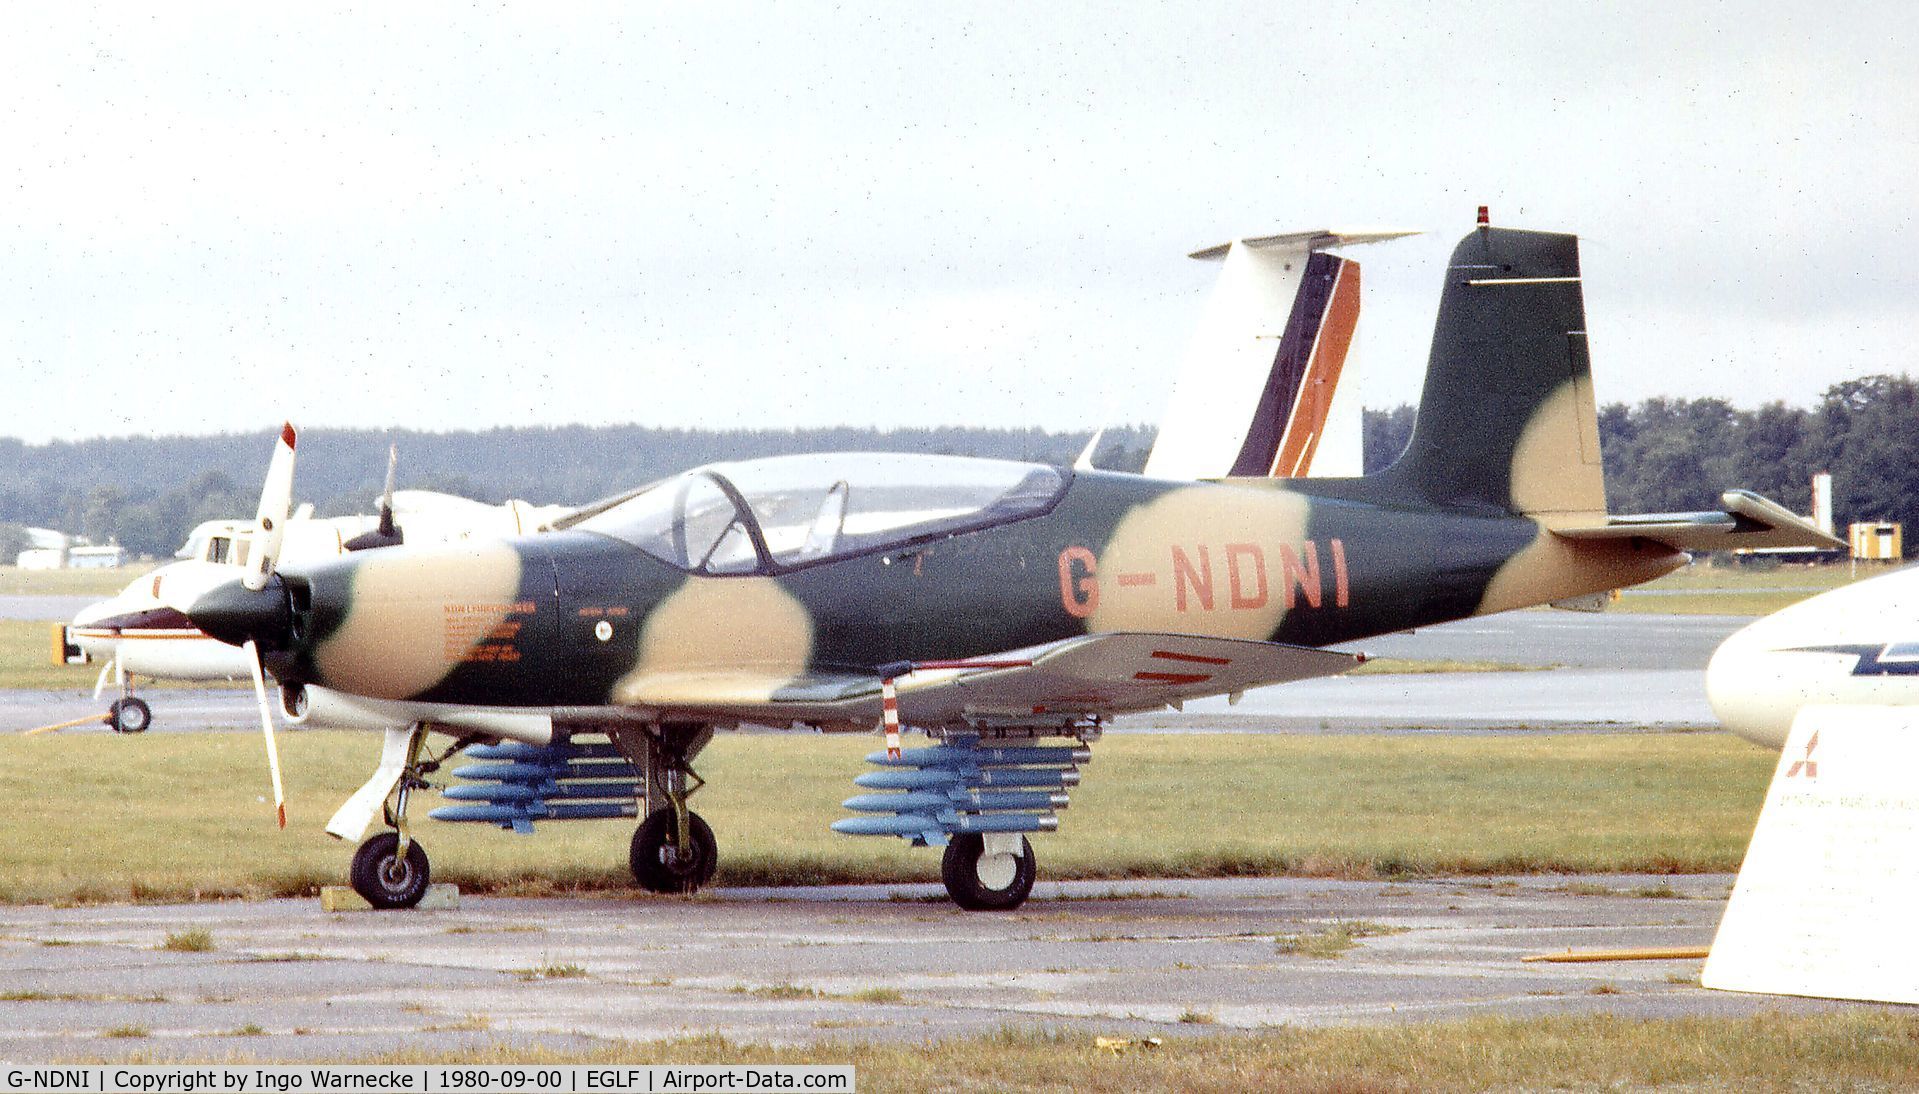 G-NDNI, 1977 Norman NDN-1 Firecracker C/N 001, NDN-Aircraft NDN-1 Firecracker at Farnborough International 1980